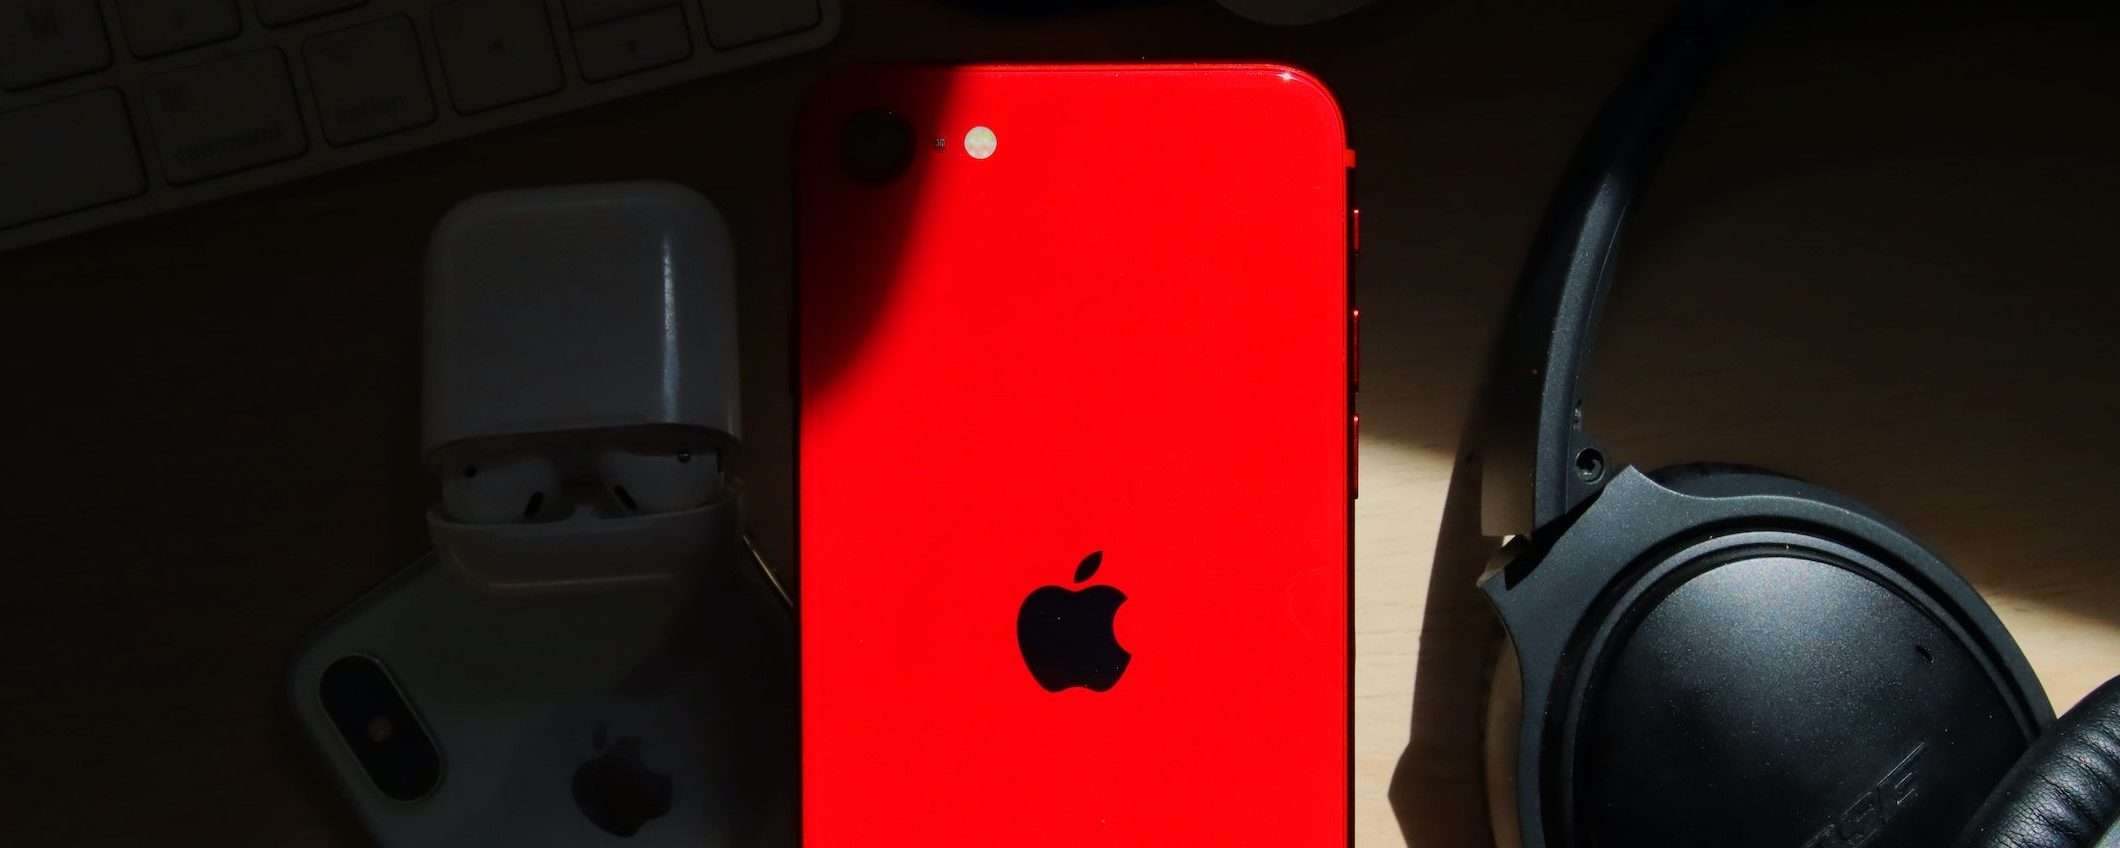 iPhone SE 4: display OLED, Face ID e altre novità